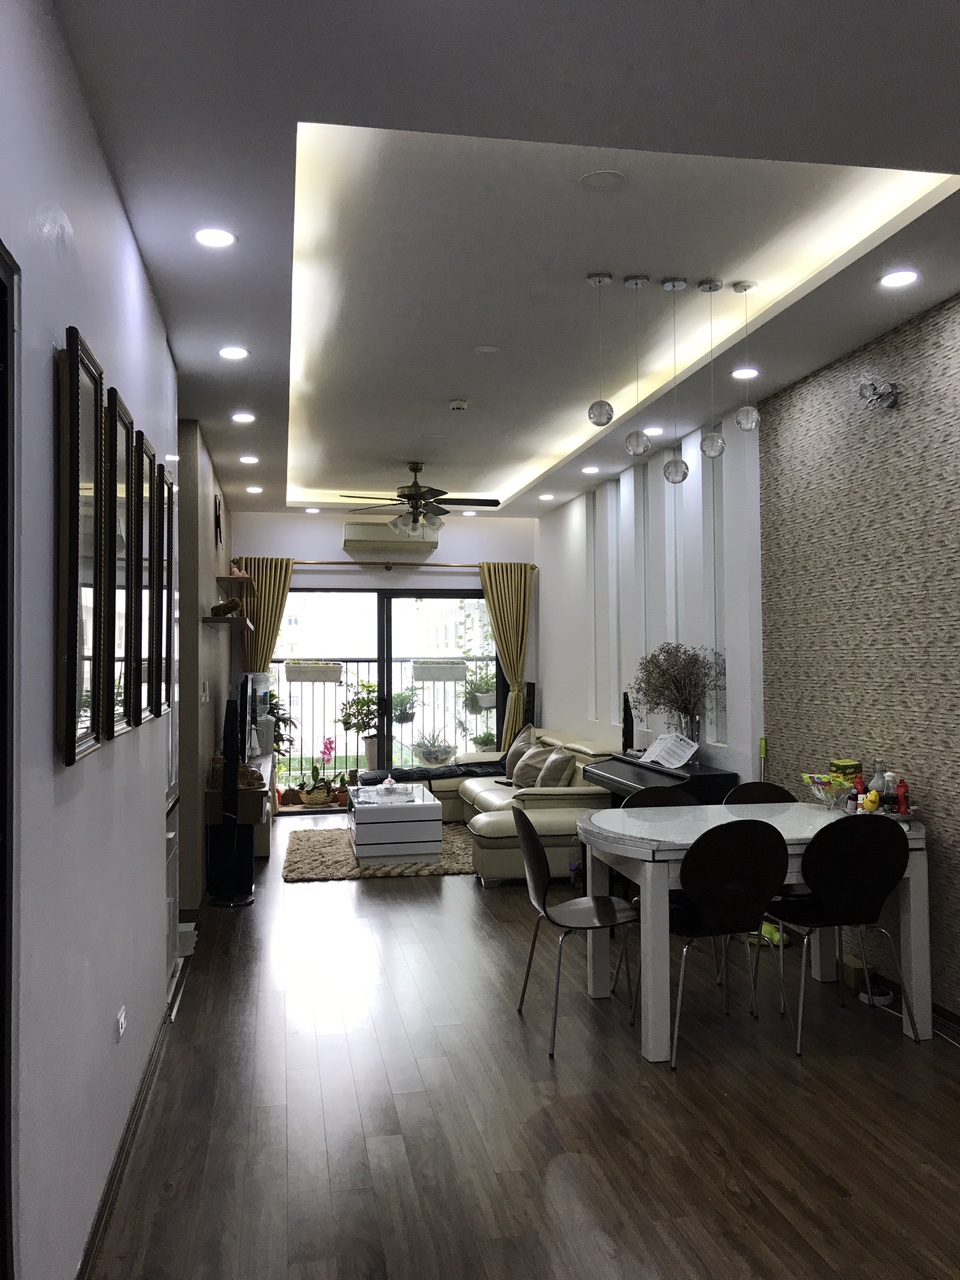 Căn hộ cao cấp G3AB - Yên Hòa Sunshine, 2 phòng ngủ đầy đủ nội thất đẹp, giá 15 triệu/tháng 747113